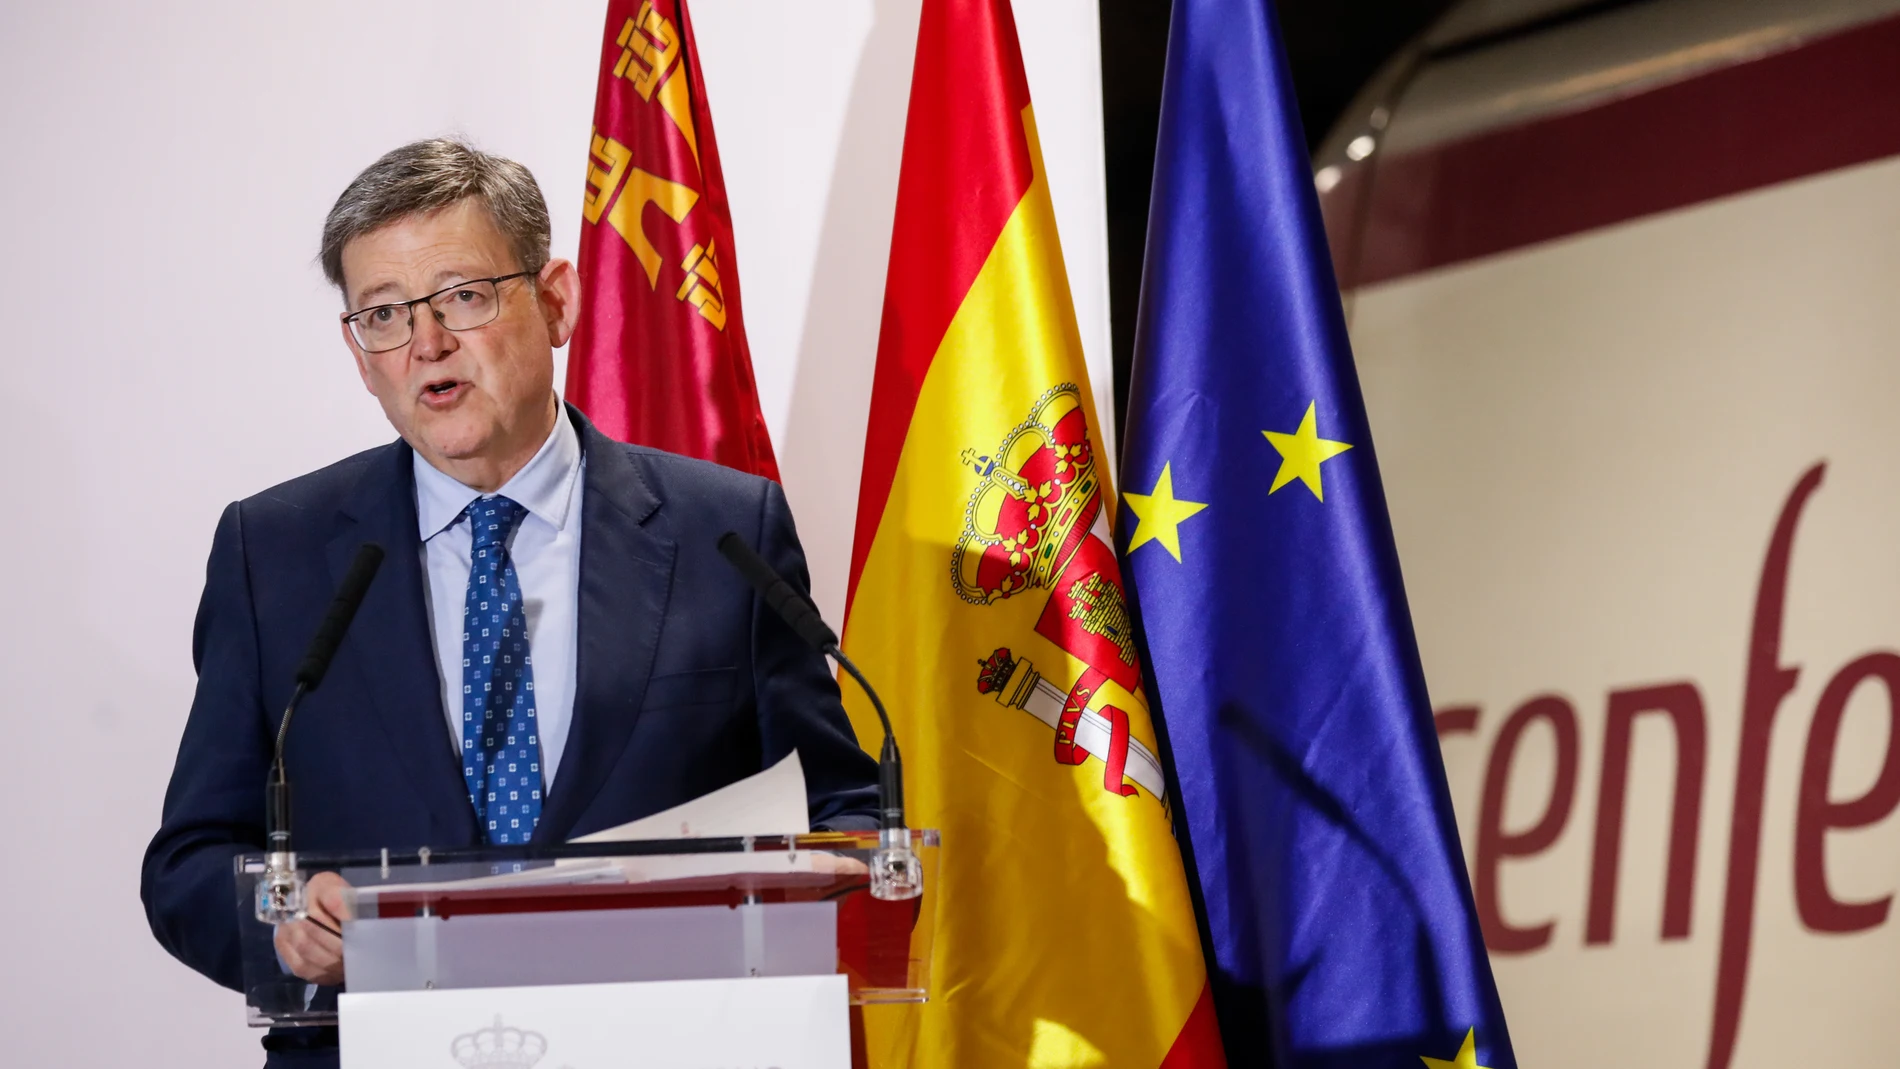 El presidente de la Generalitat Valenciana, Ximo Puig, interviene en la inauguración de la línea de AVE Madrid-Murcia, en la estación Murcia del Carmen